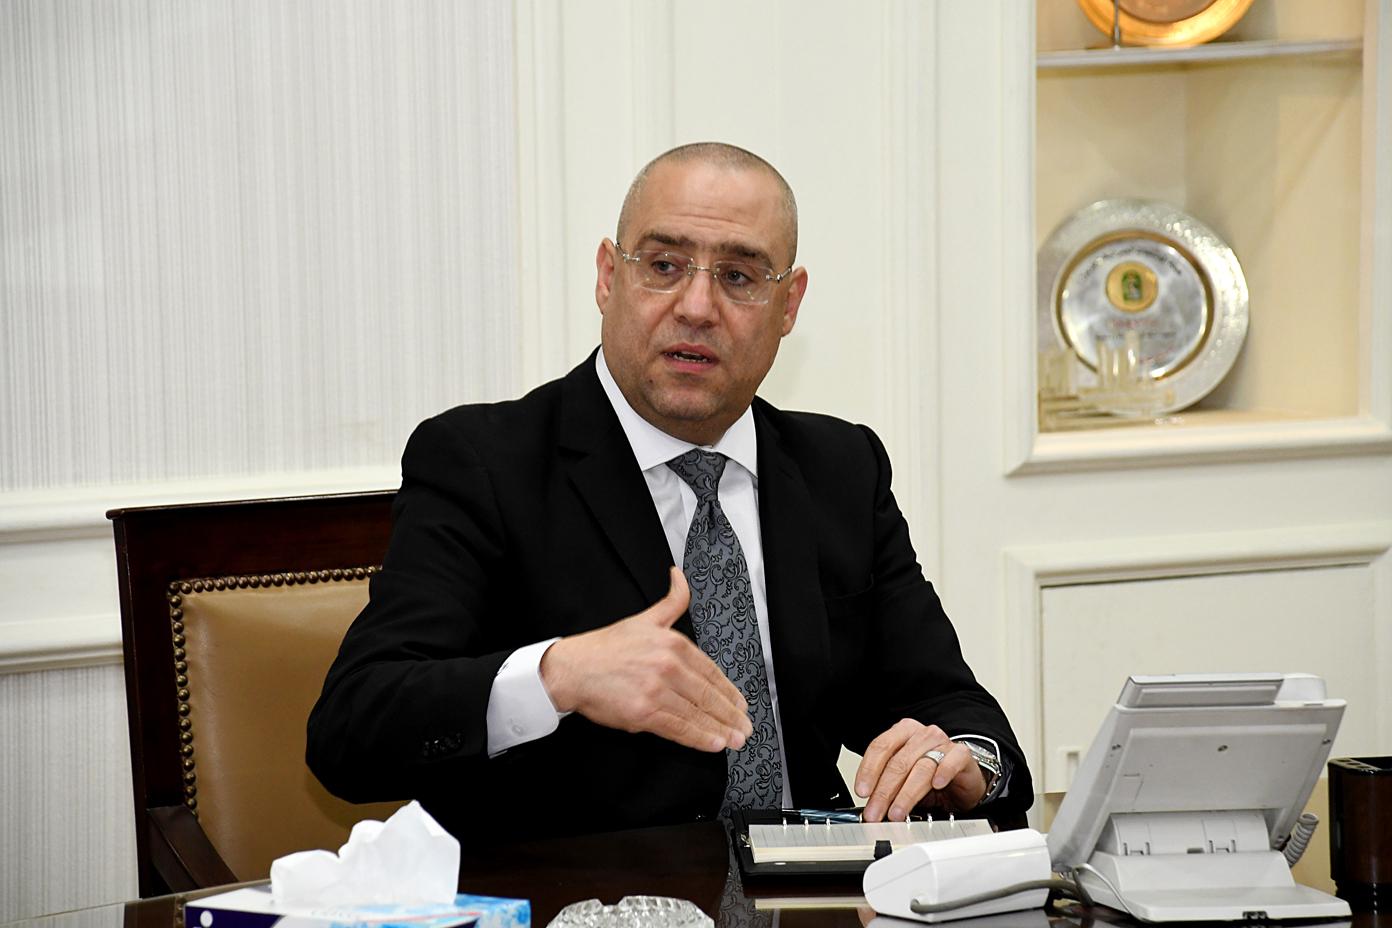   وزير الاسكان يكلف مركز بحوث البناء بالتأكد من السلامة الإنشائية لمحطة مصر